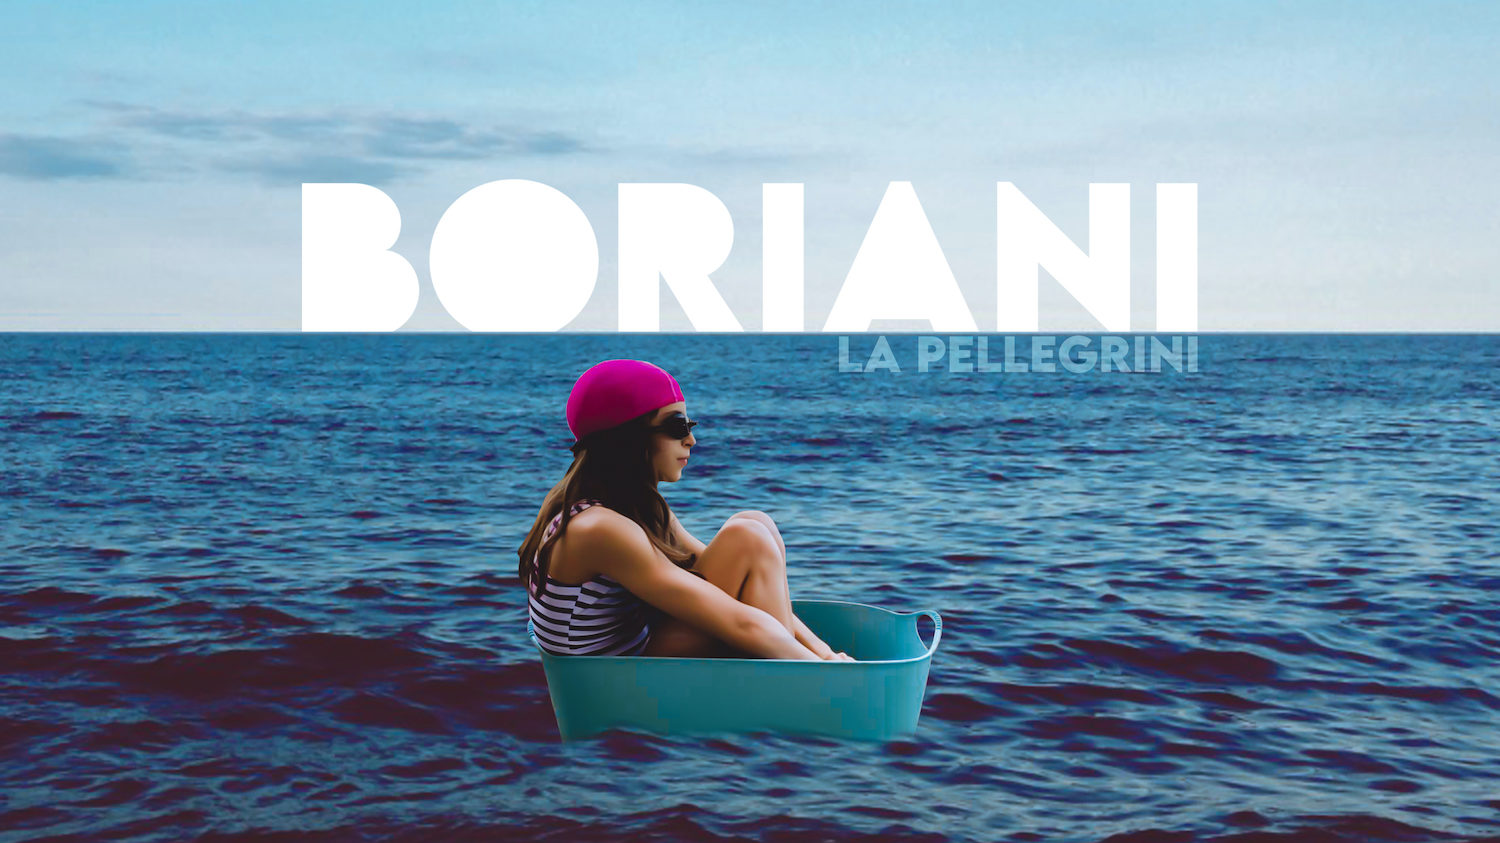 La Pellegrini, il nuovo singolo di Boriani